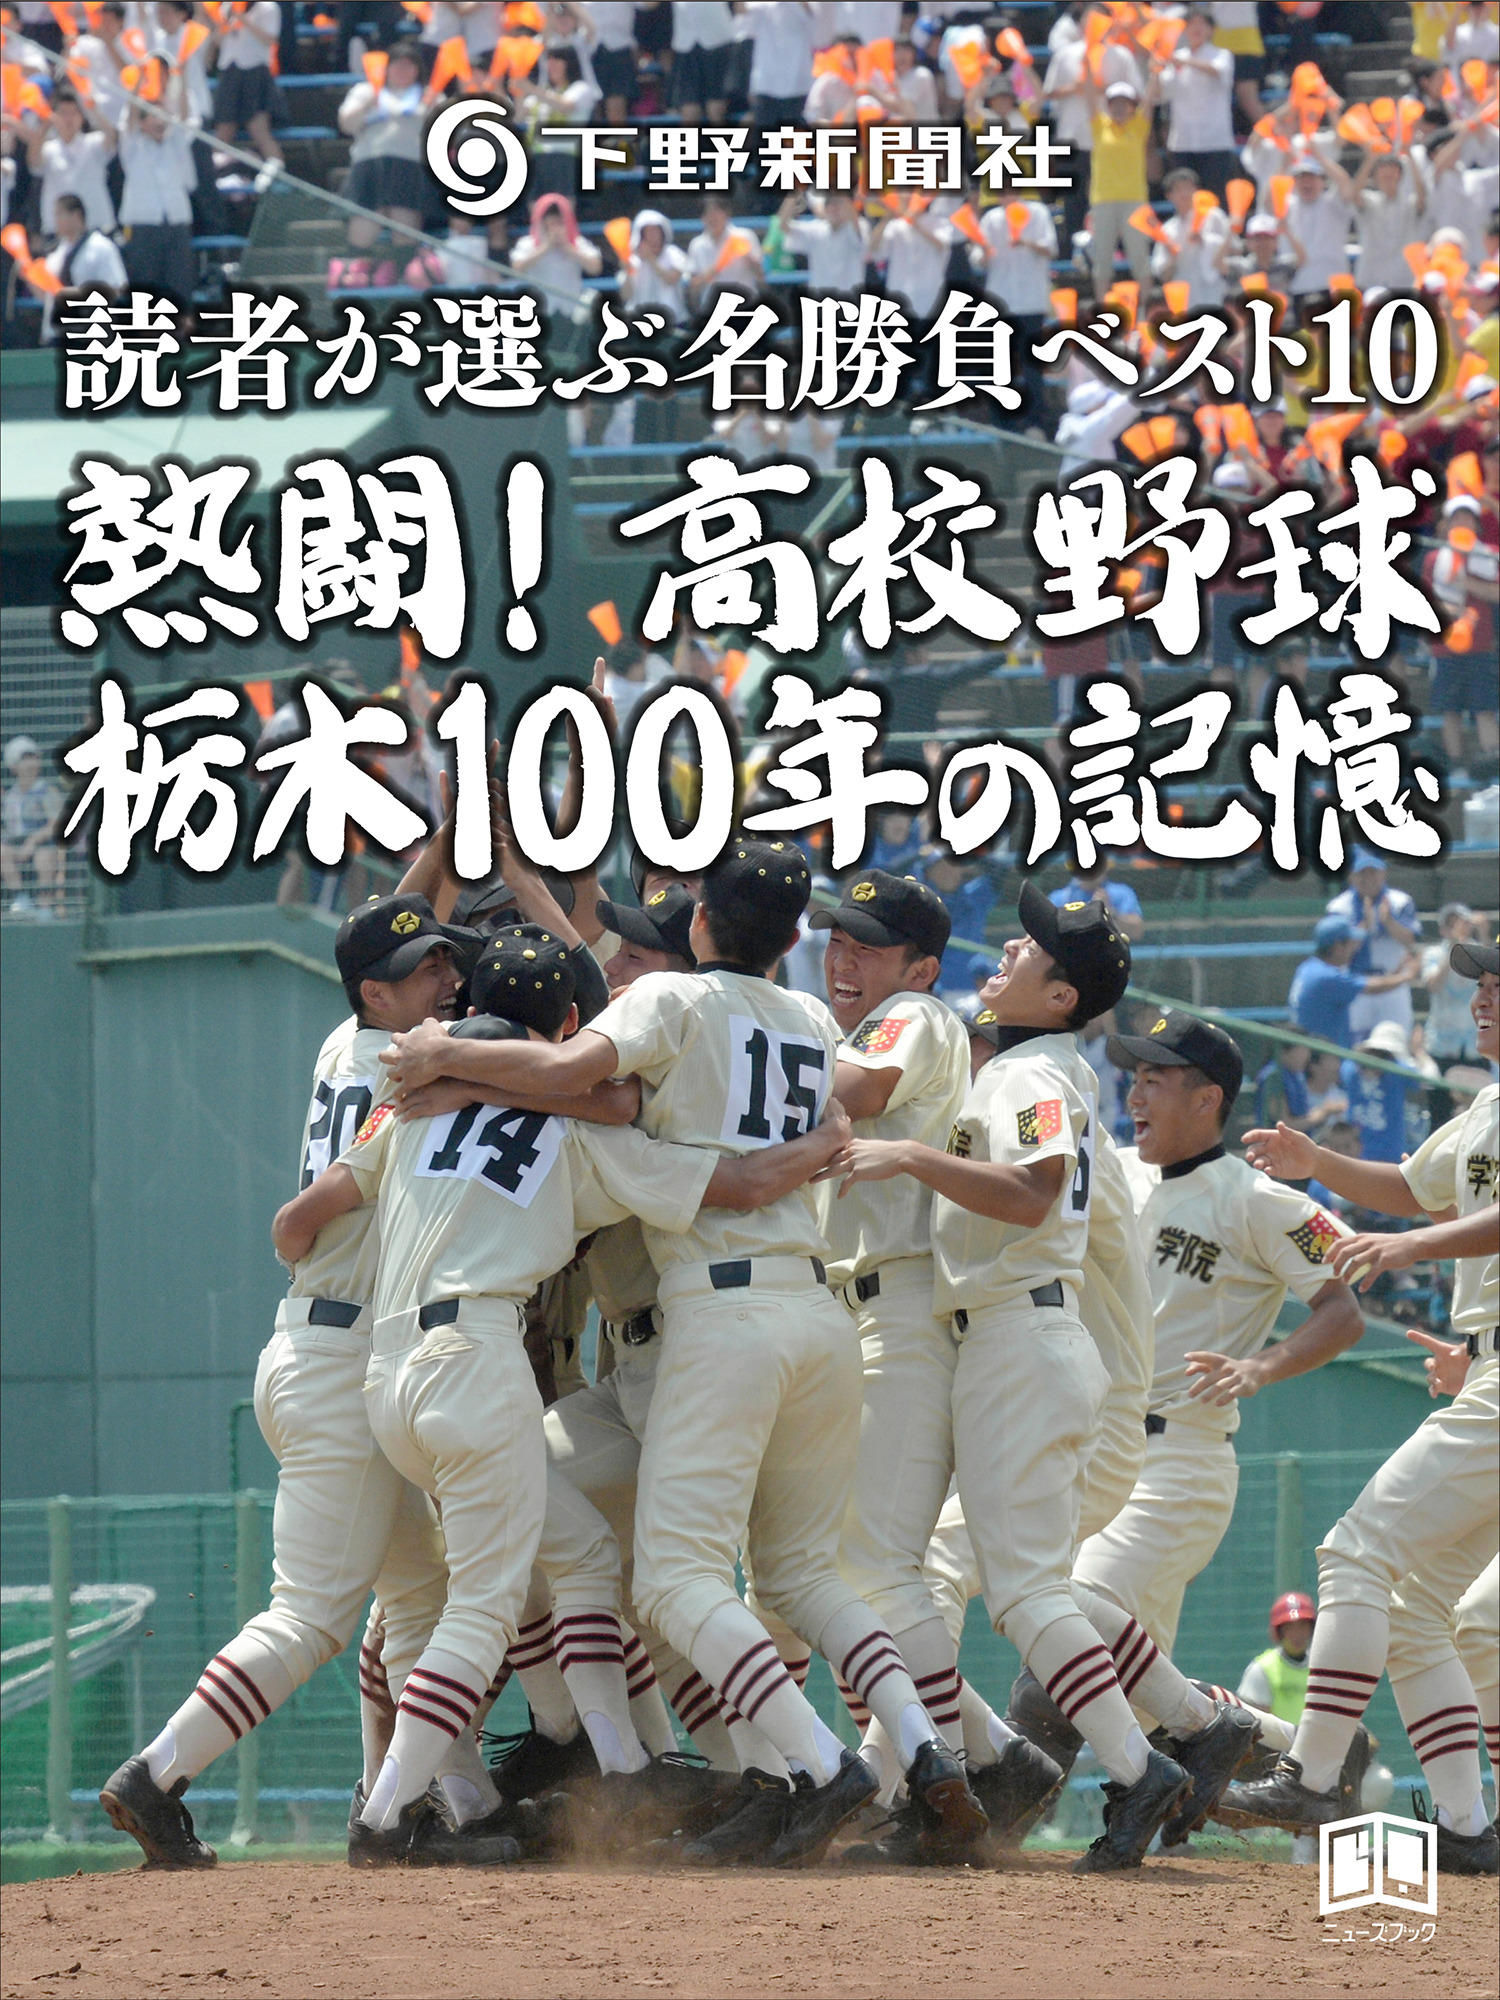 怪物江川の試合など、栃木の高校野球100年が電子書籍化 | CYCLE